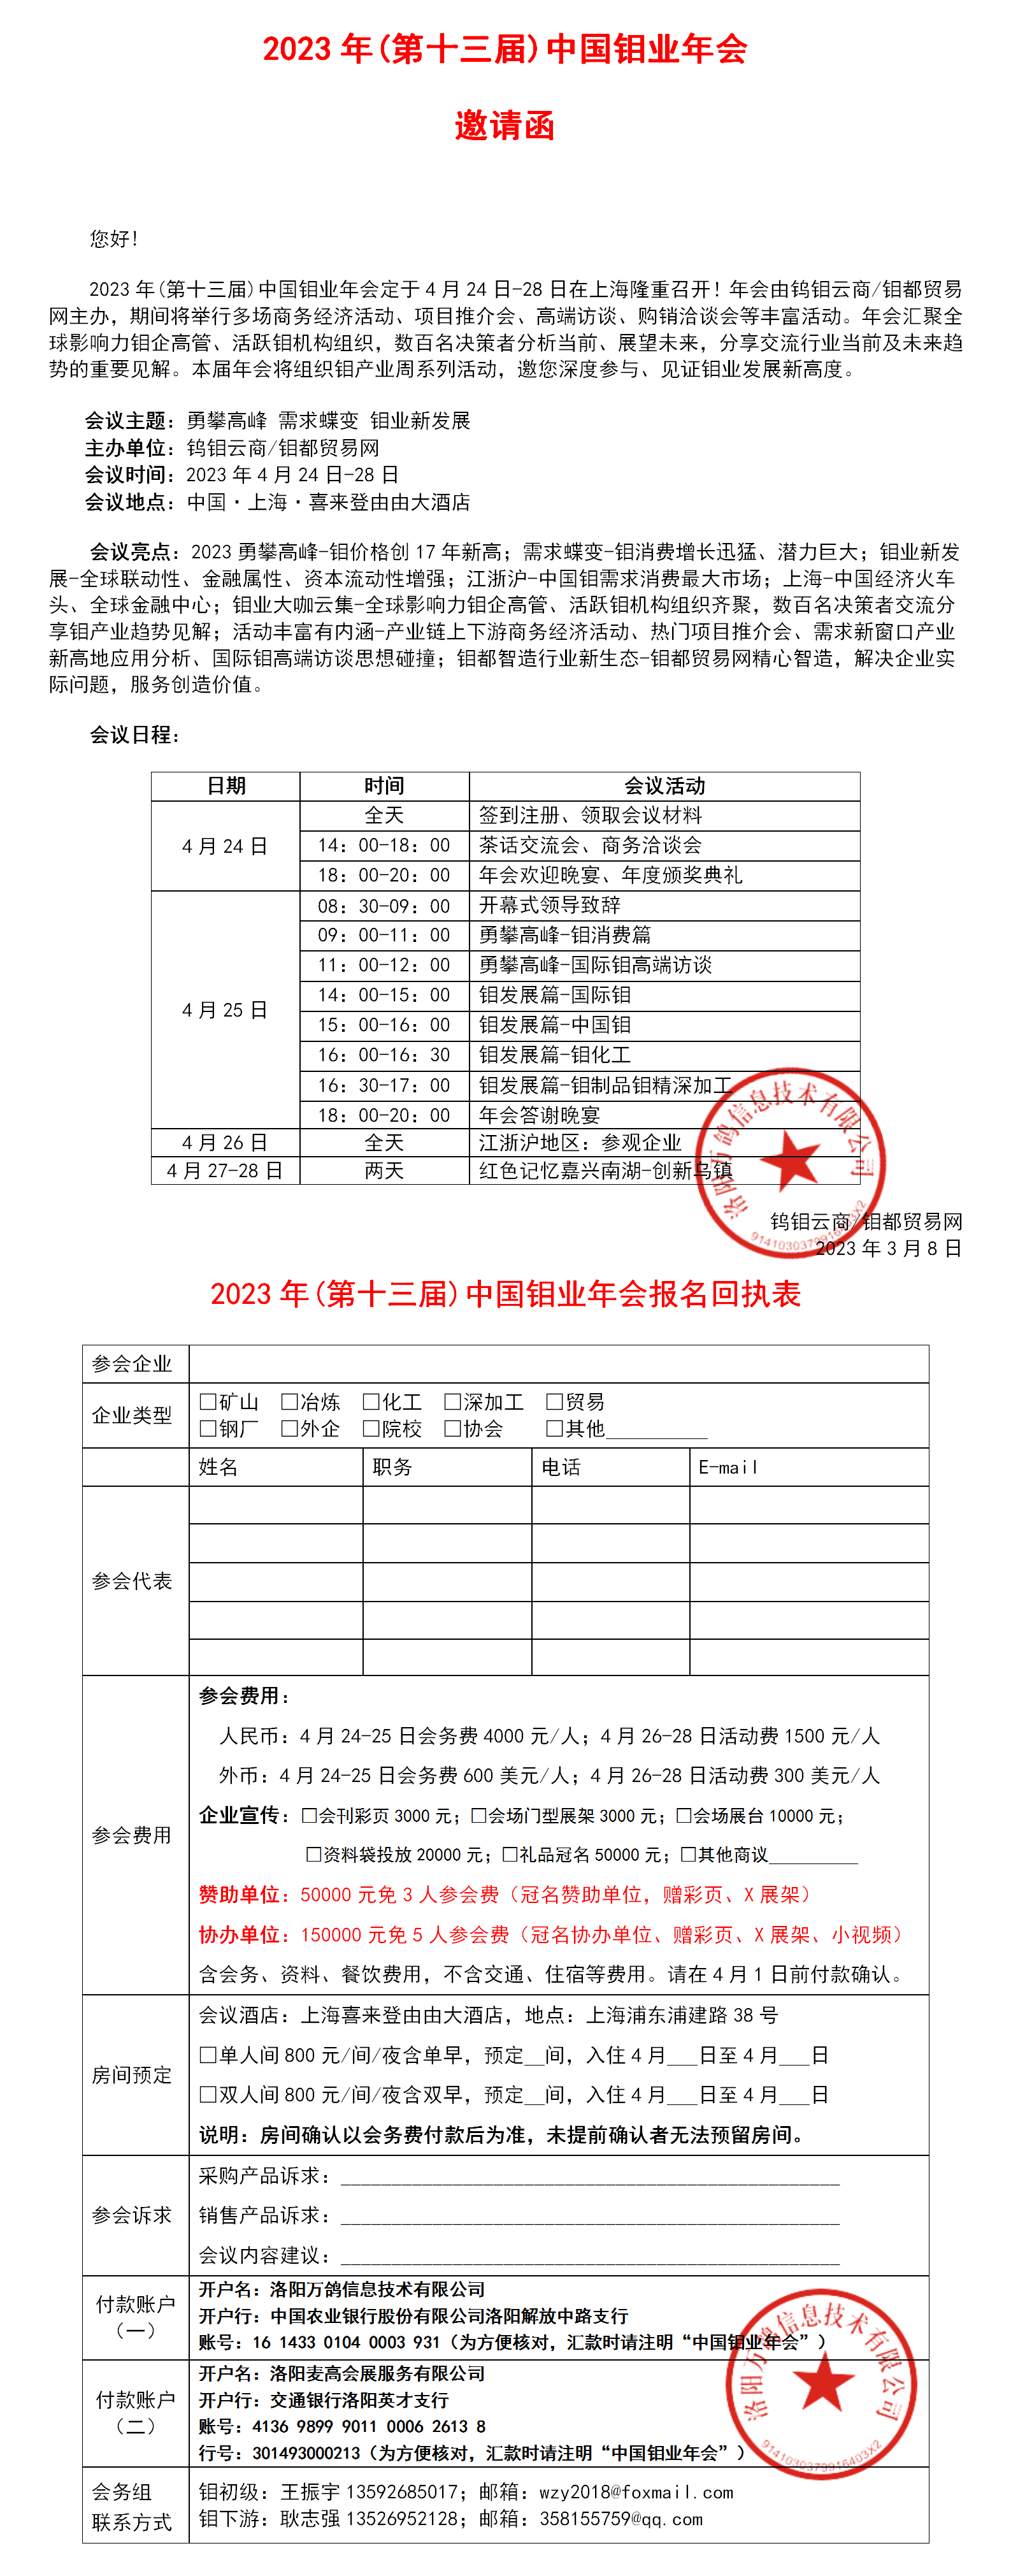 2023年上海年会邀请函图片.png